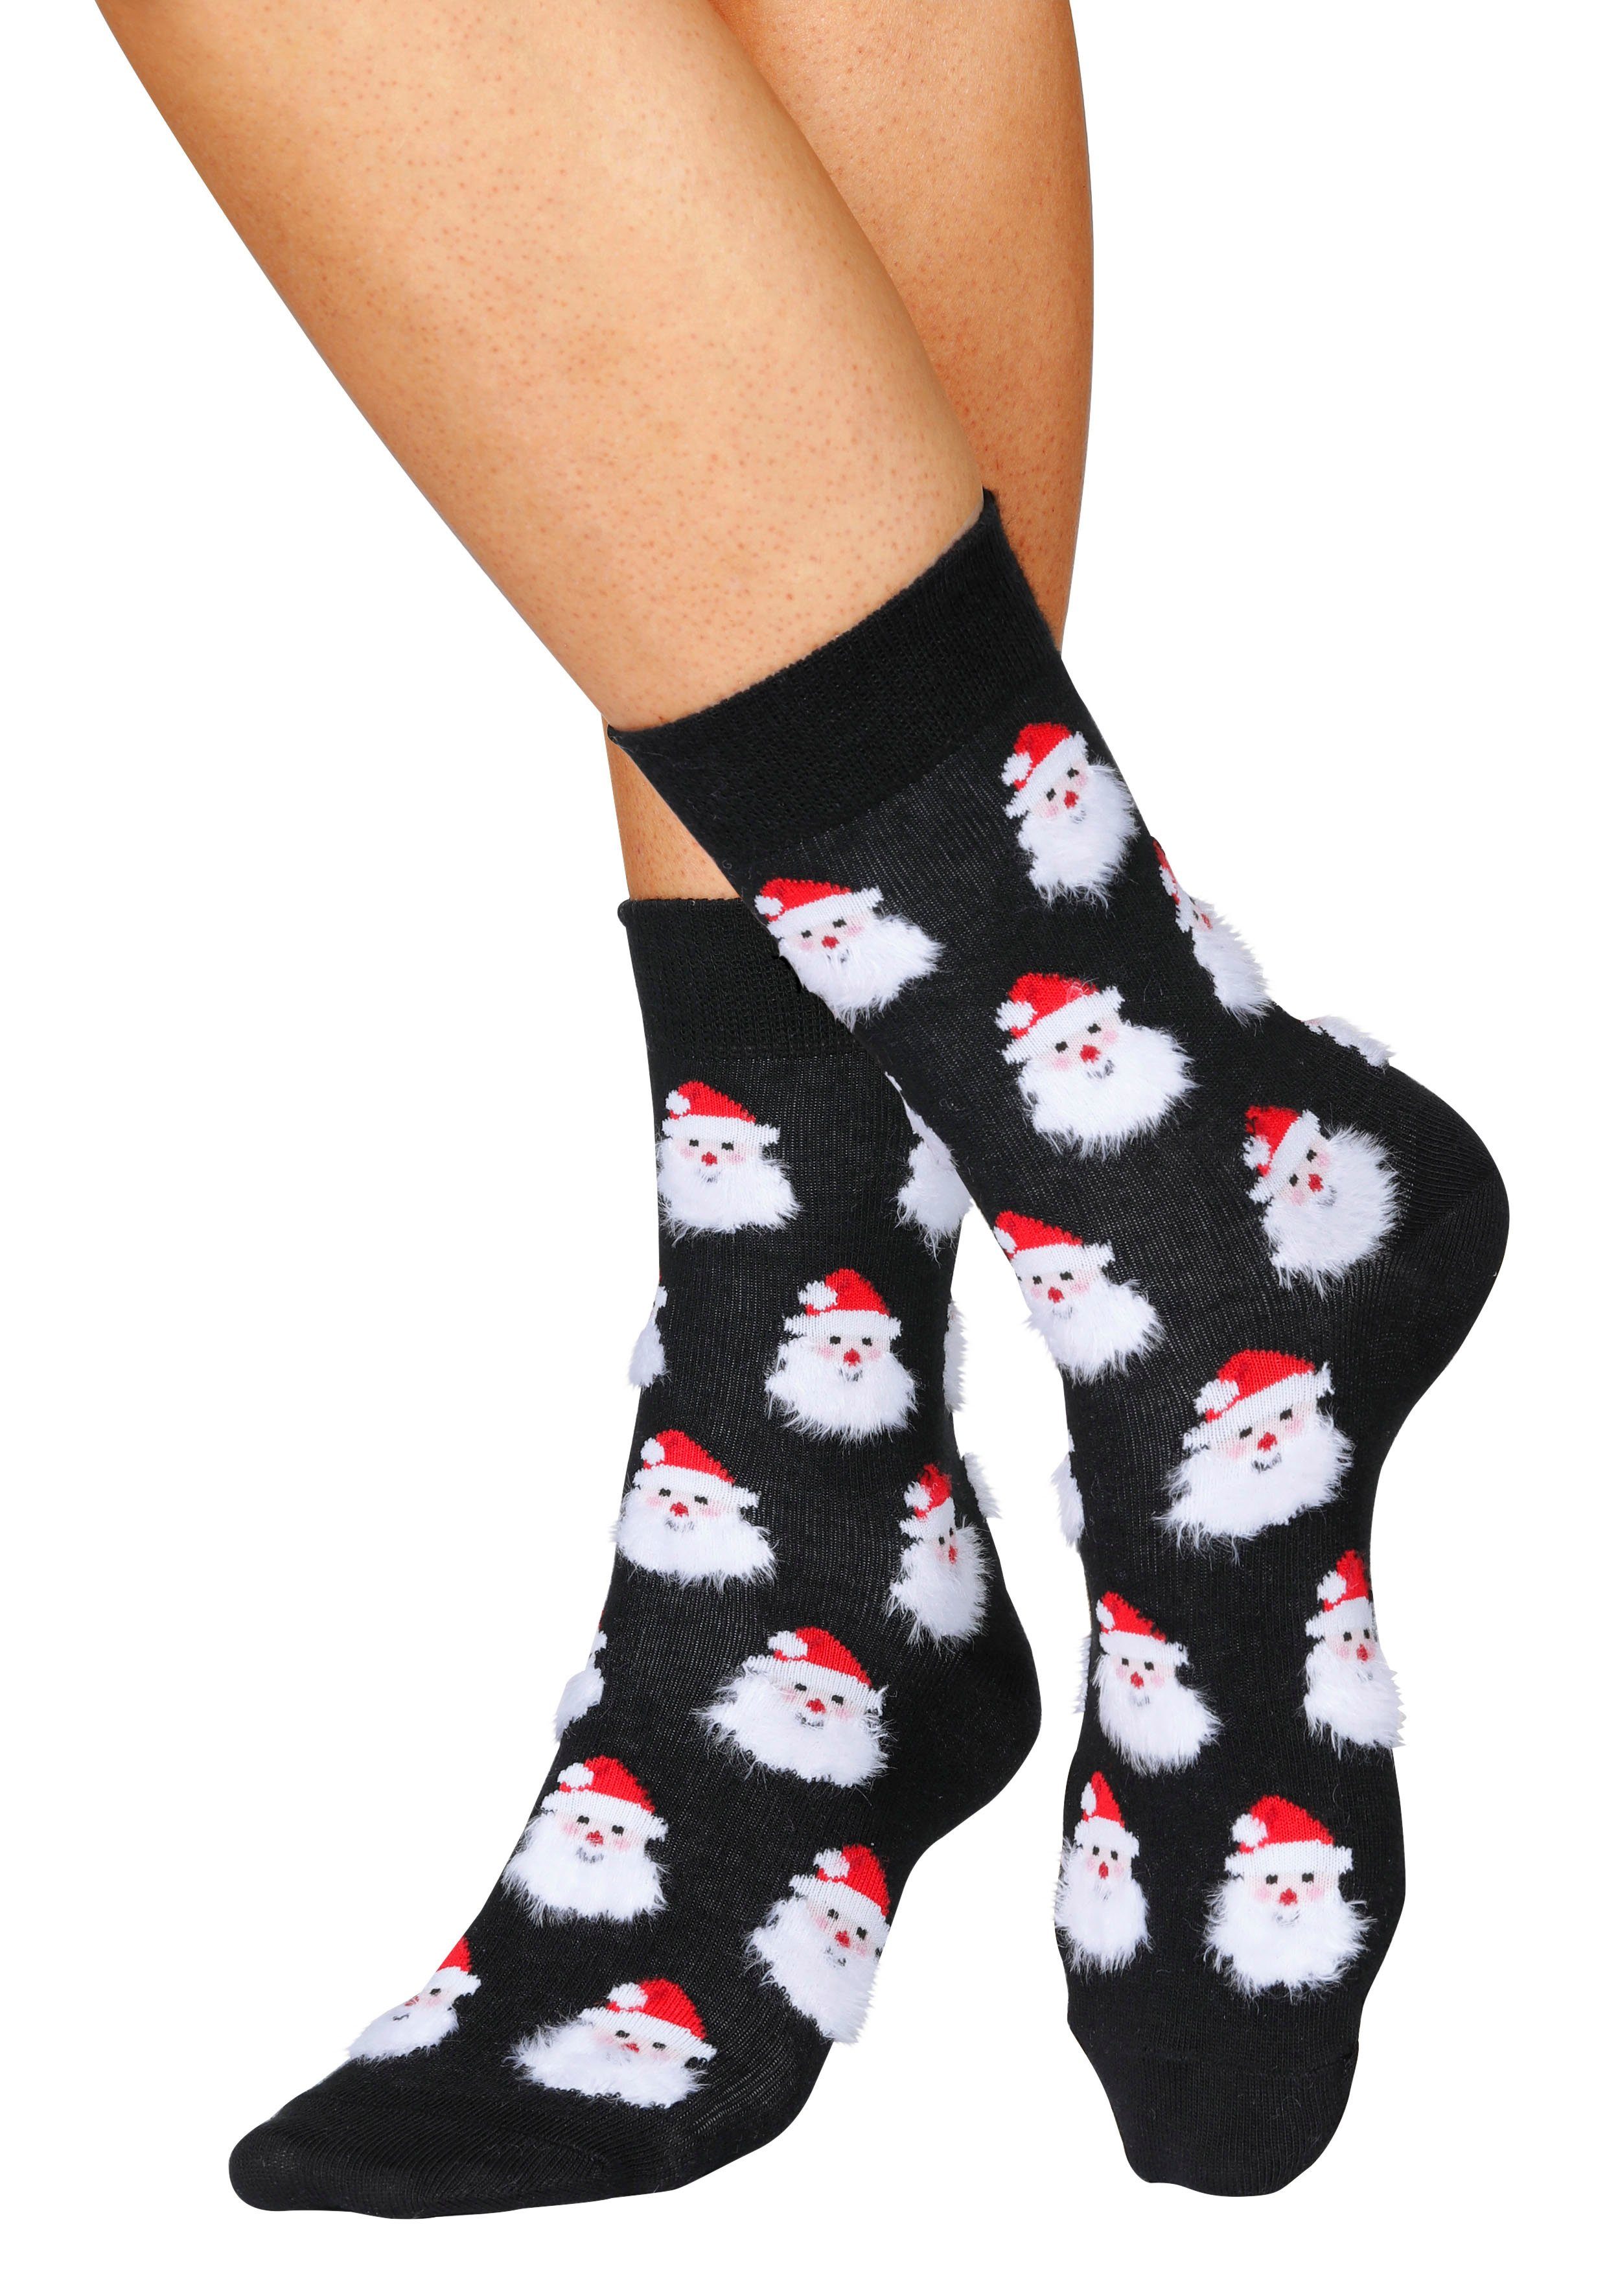 Socken lustigen (3-Paar) H.I.S Weihnachtsmotiven schwarz-rot-gemustert 3x mit